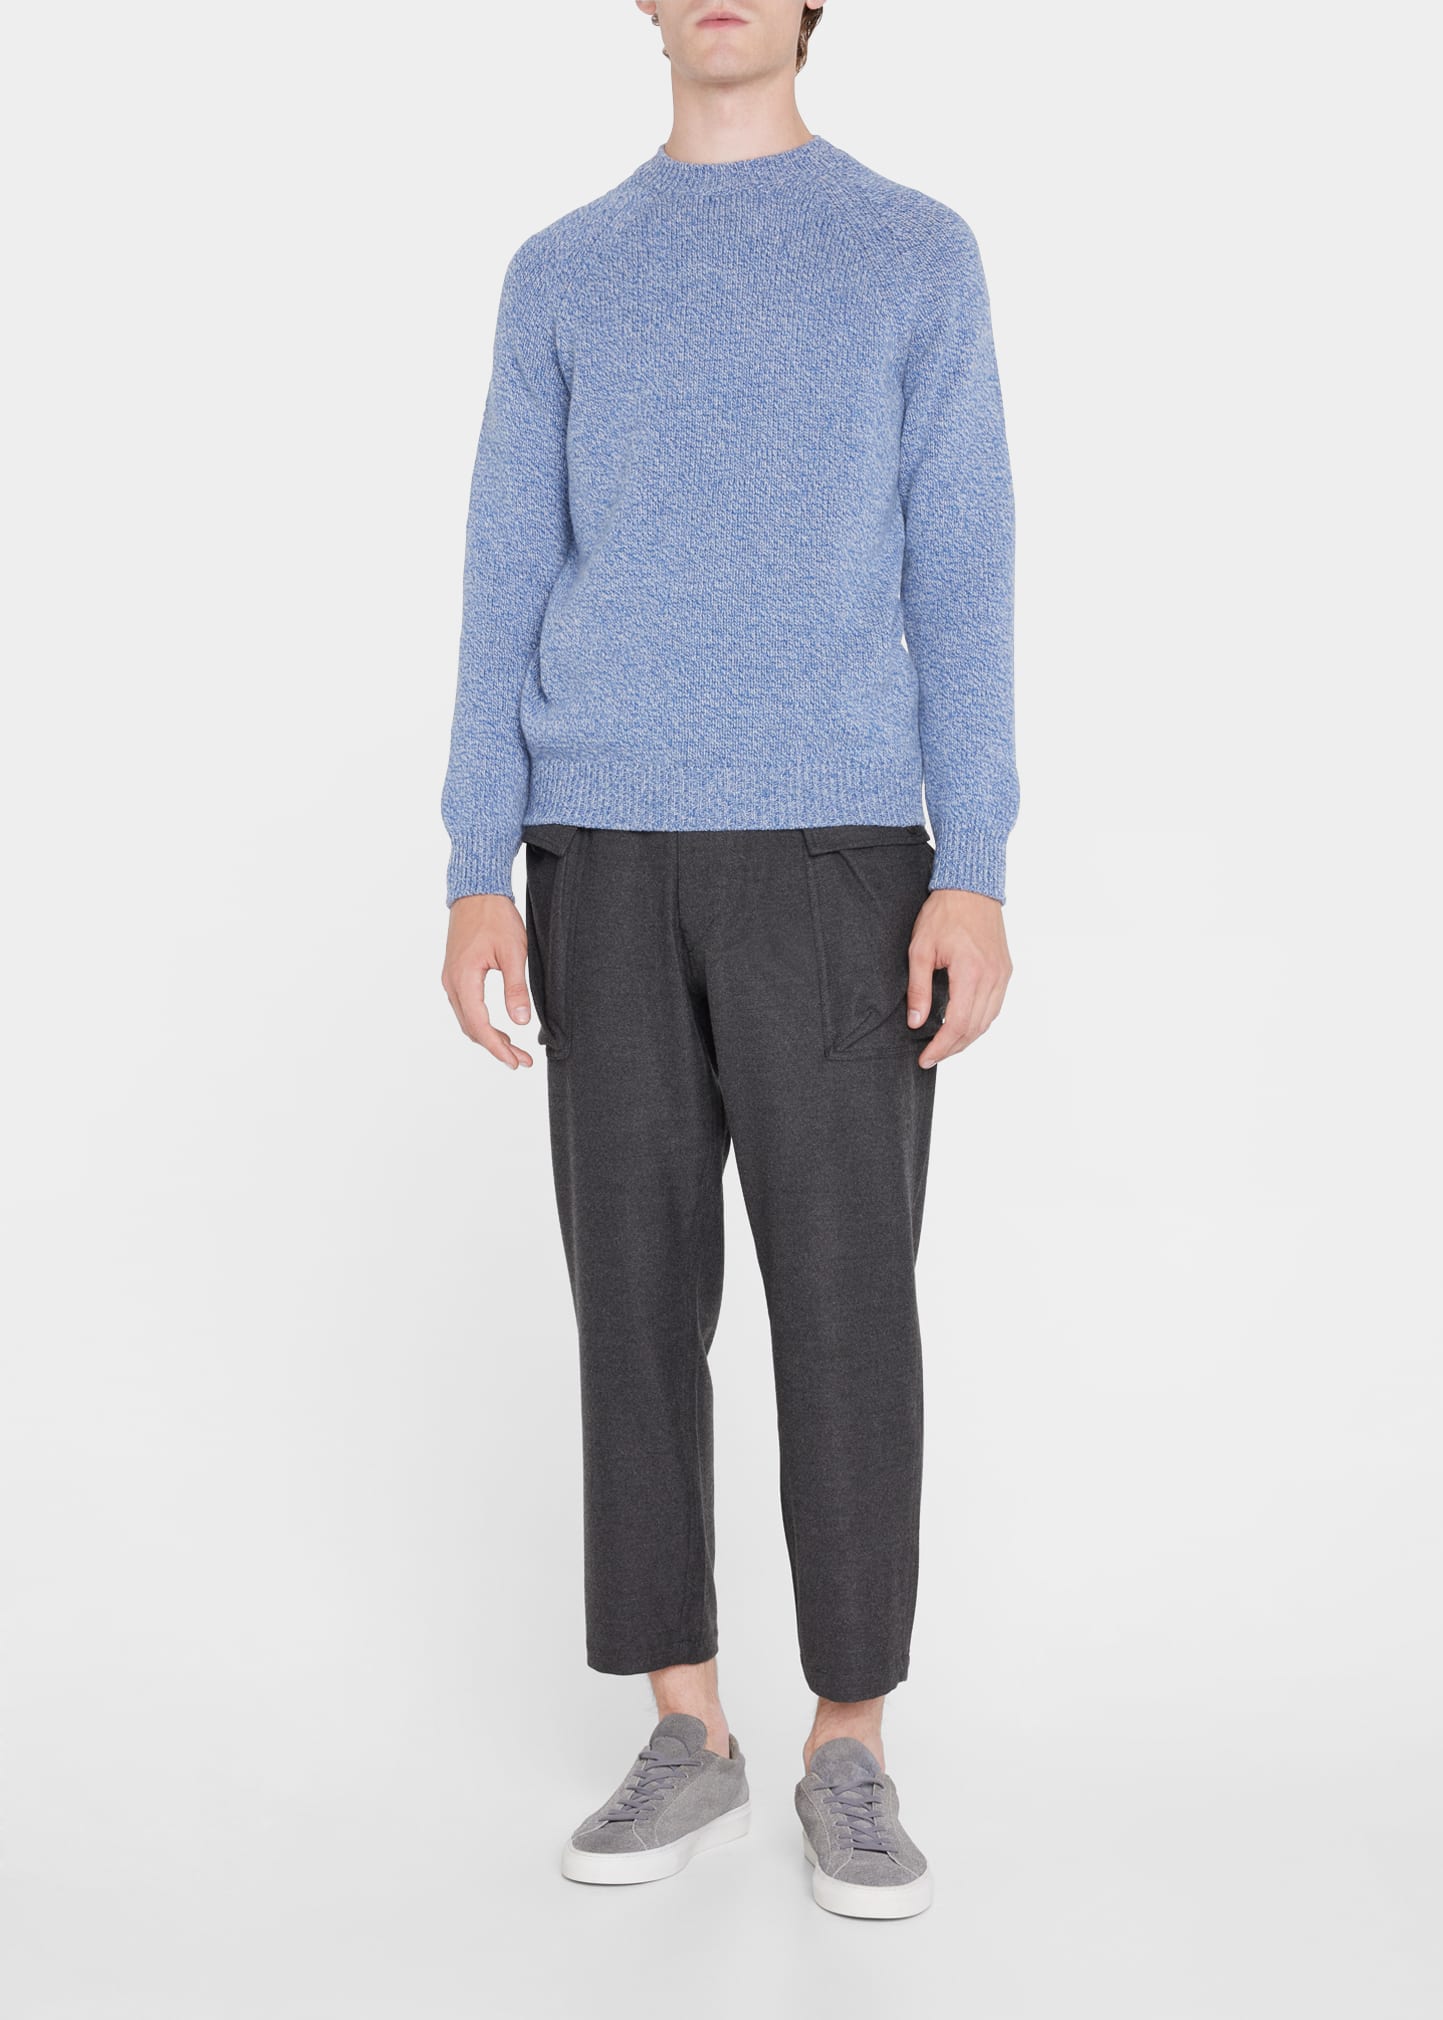 Men's Pierre Wool Sweater